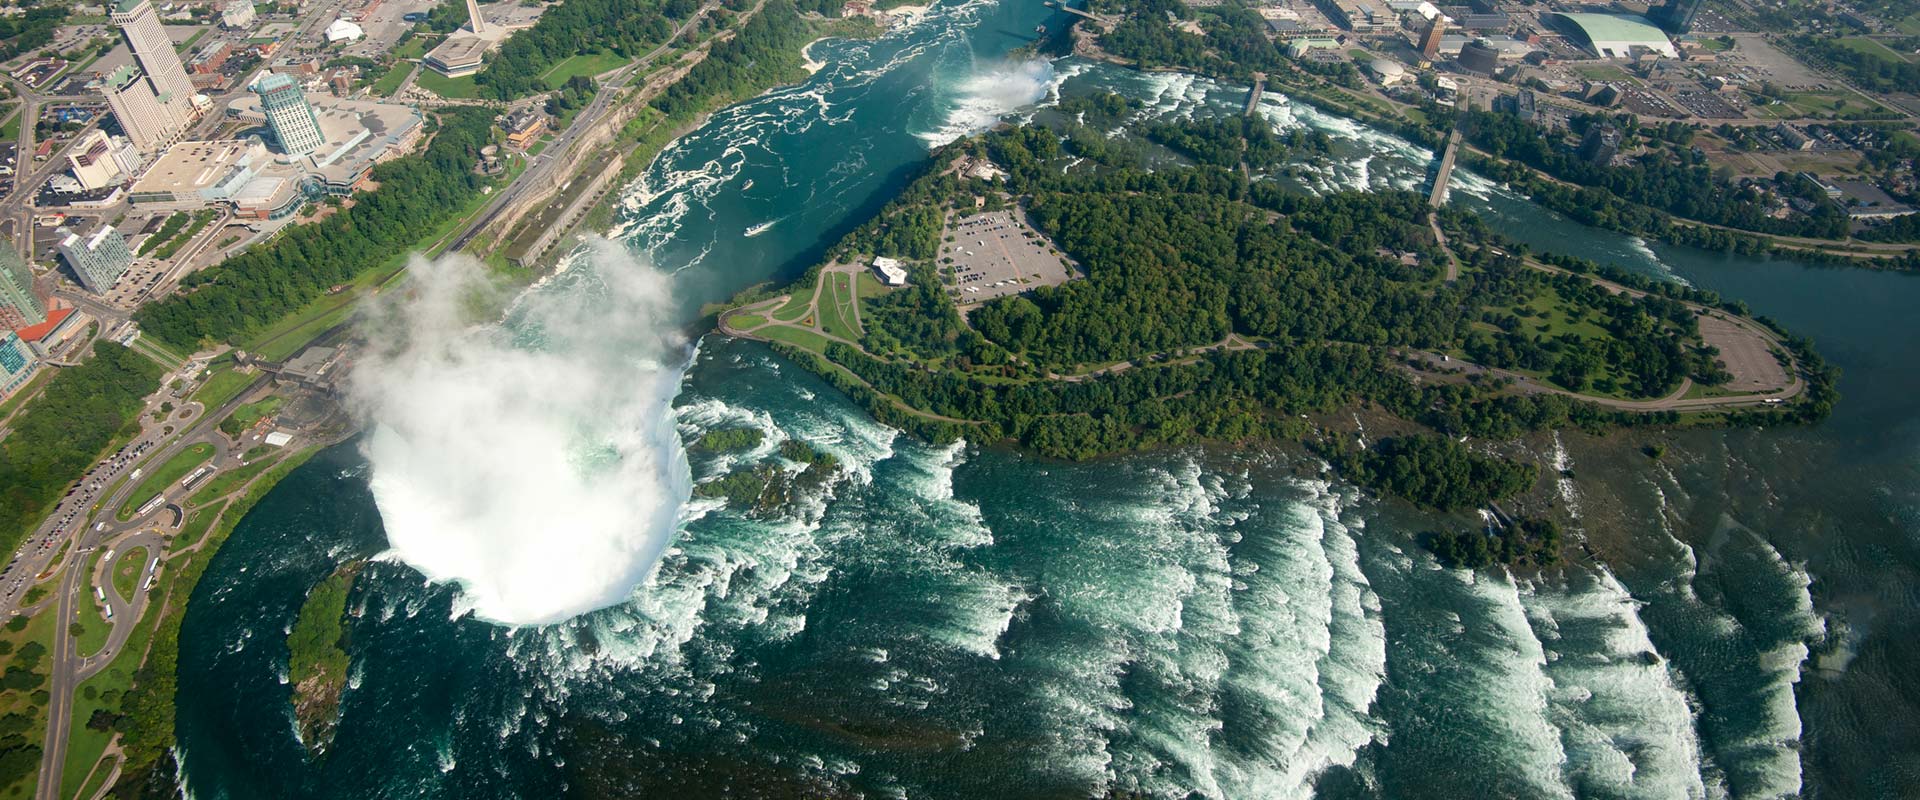 Helicopter Ride over Niagara Falls